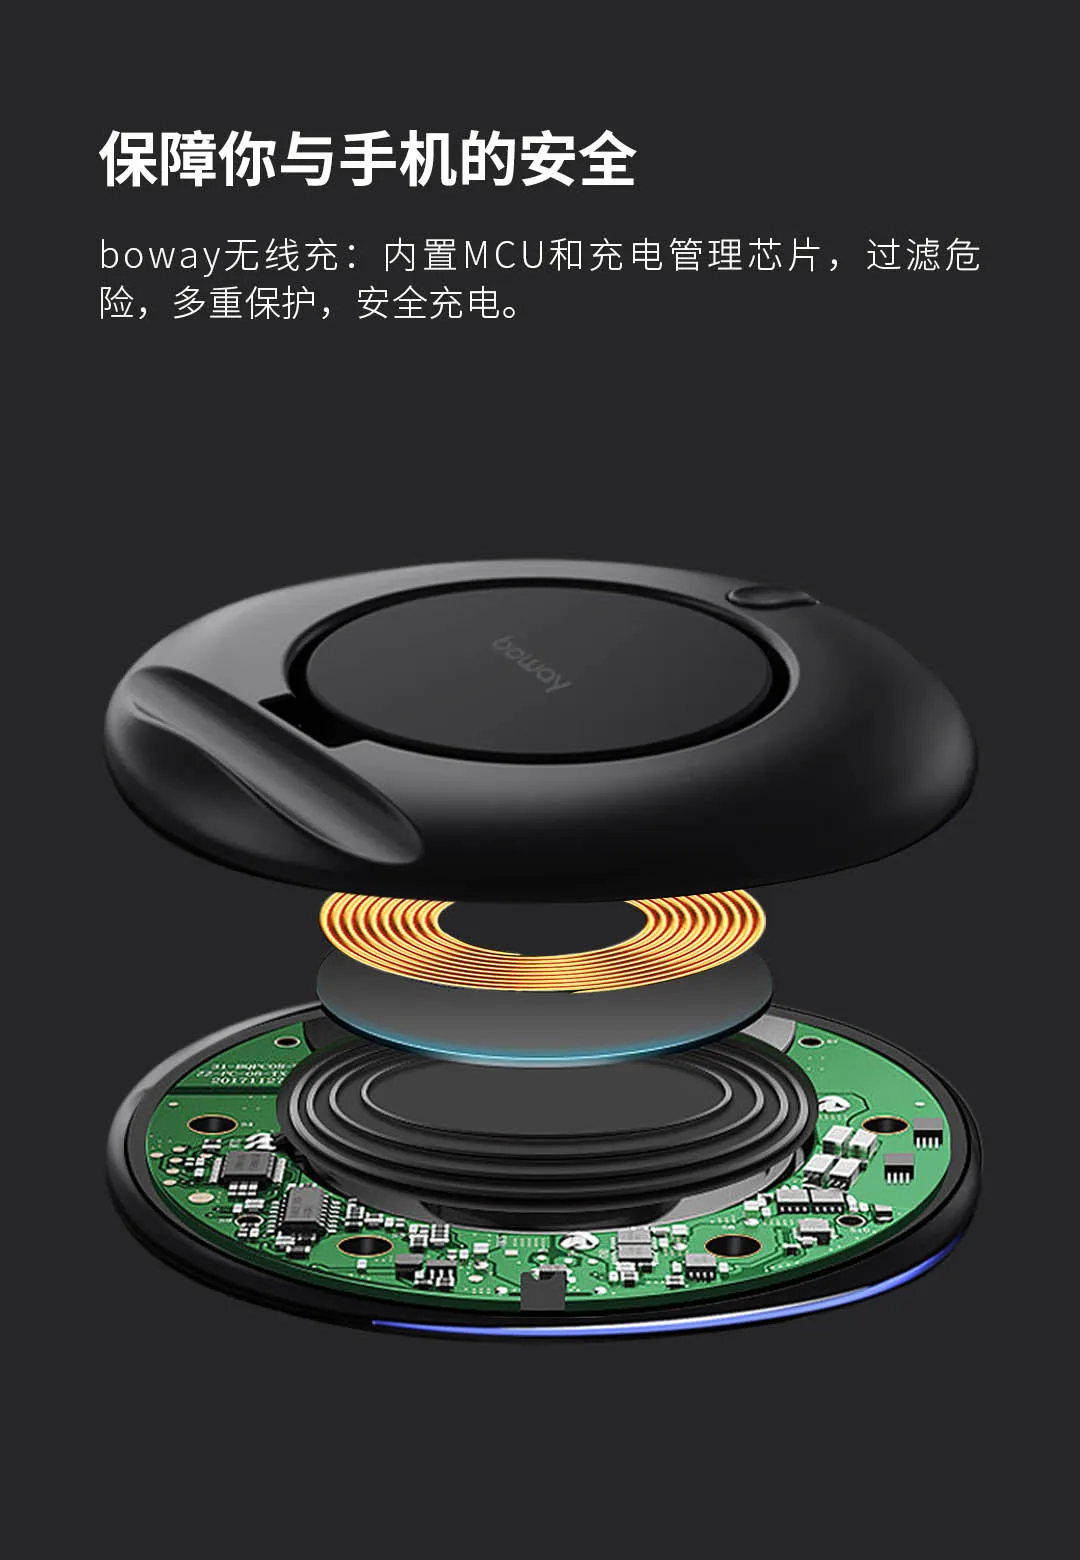 Xiaomi Mijia Youpin Boway Z1 складное Беспроводное зарядное устройство Черный Горизонтальный Вертикальный и горизонтальный 7,5 Вт/10 Вт Быстрая зарядка